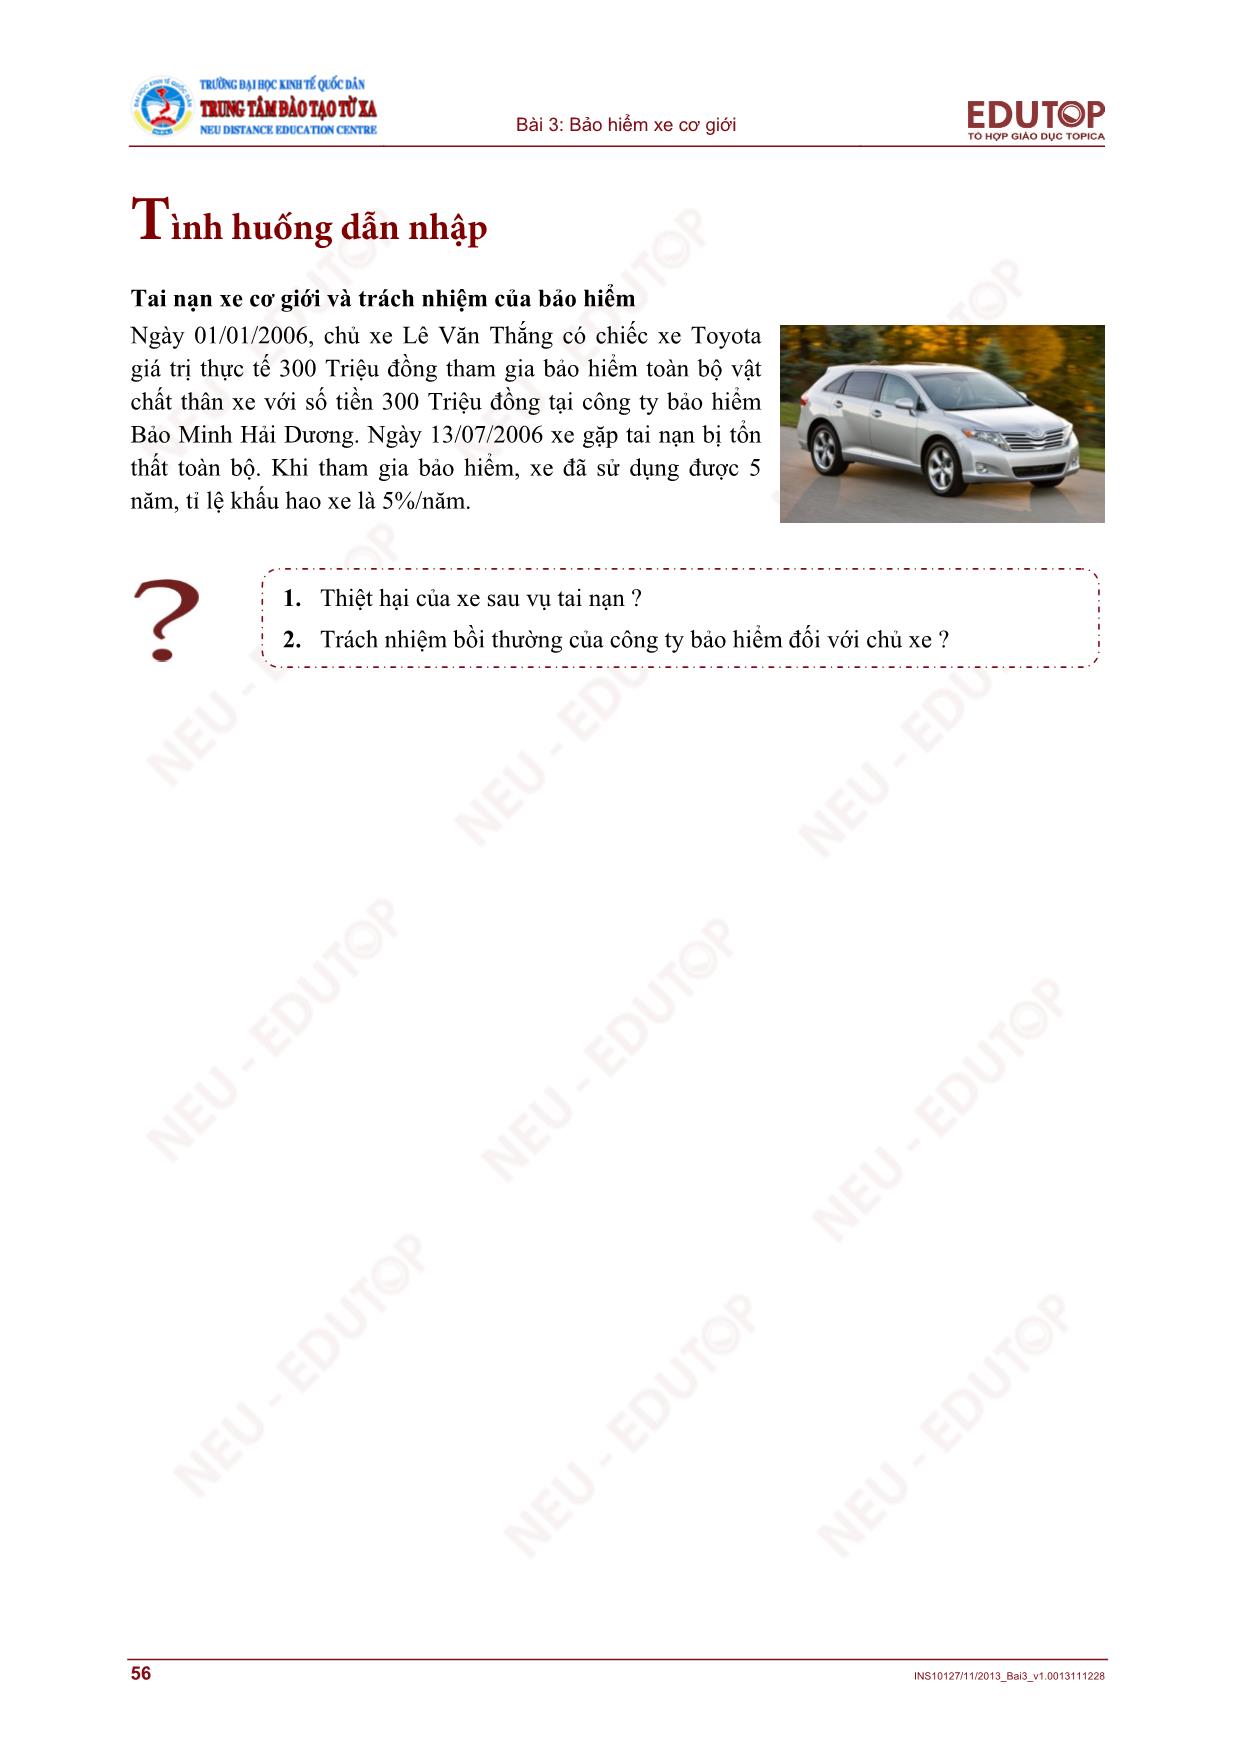 Bài giảng Bảo hiểm thương mại - Bài 3, Phần 2: Bảo hiểm xe cơ giới - Nguyễn Thị Lệ Huyền trang 2